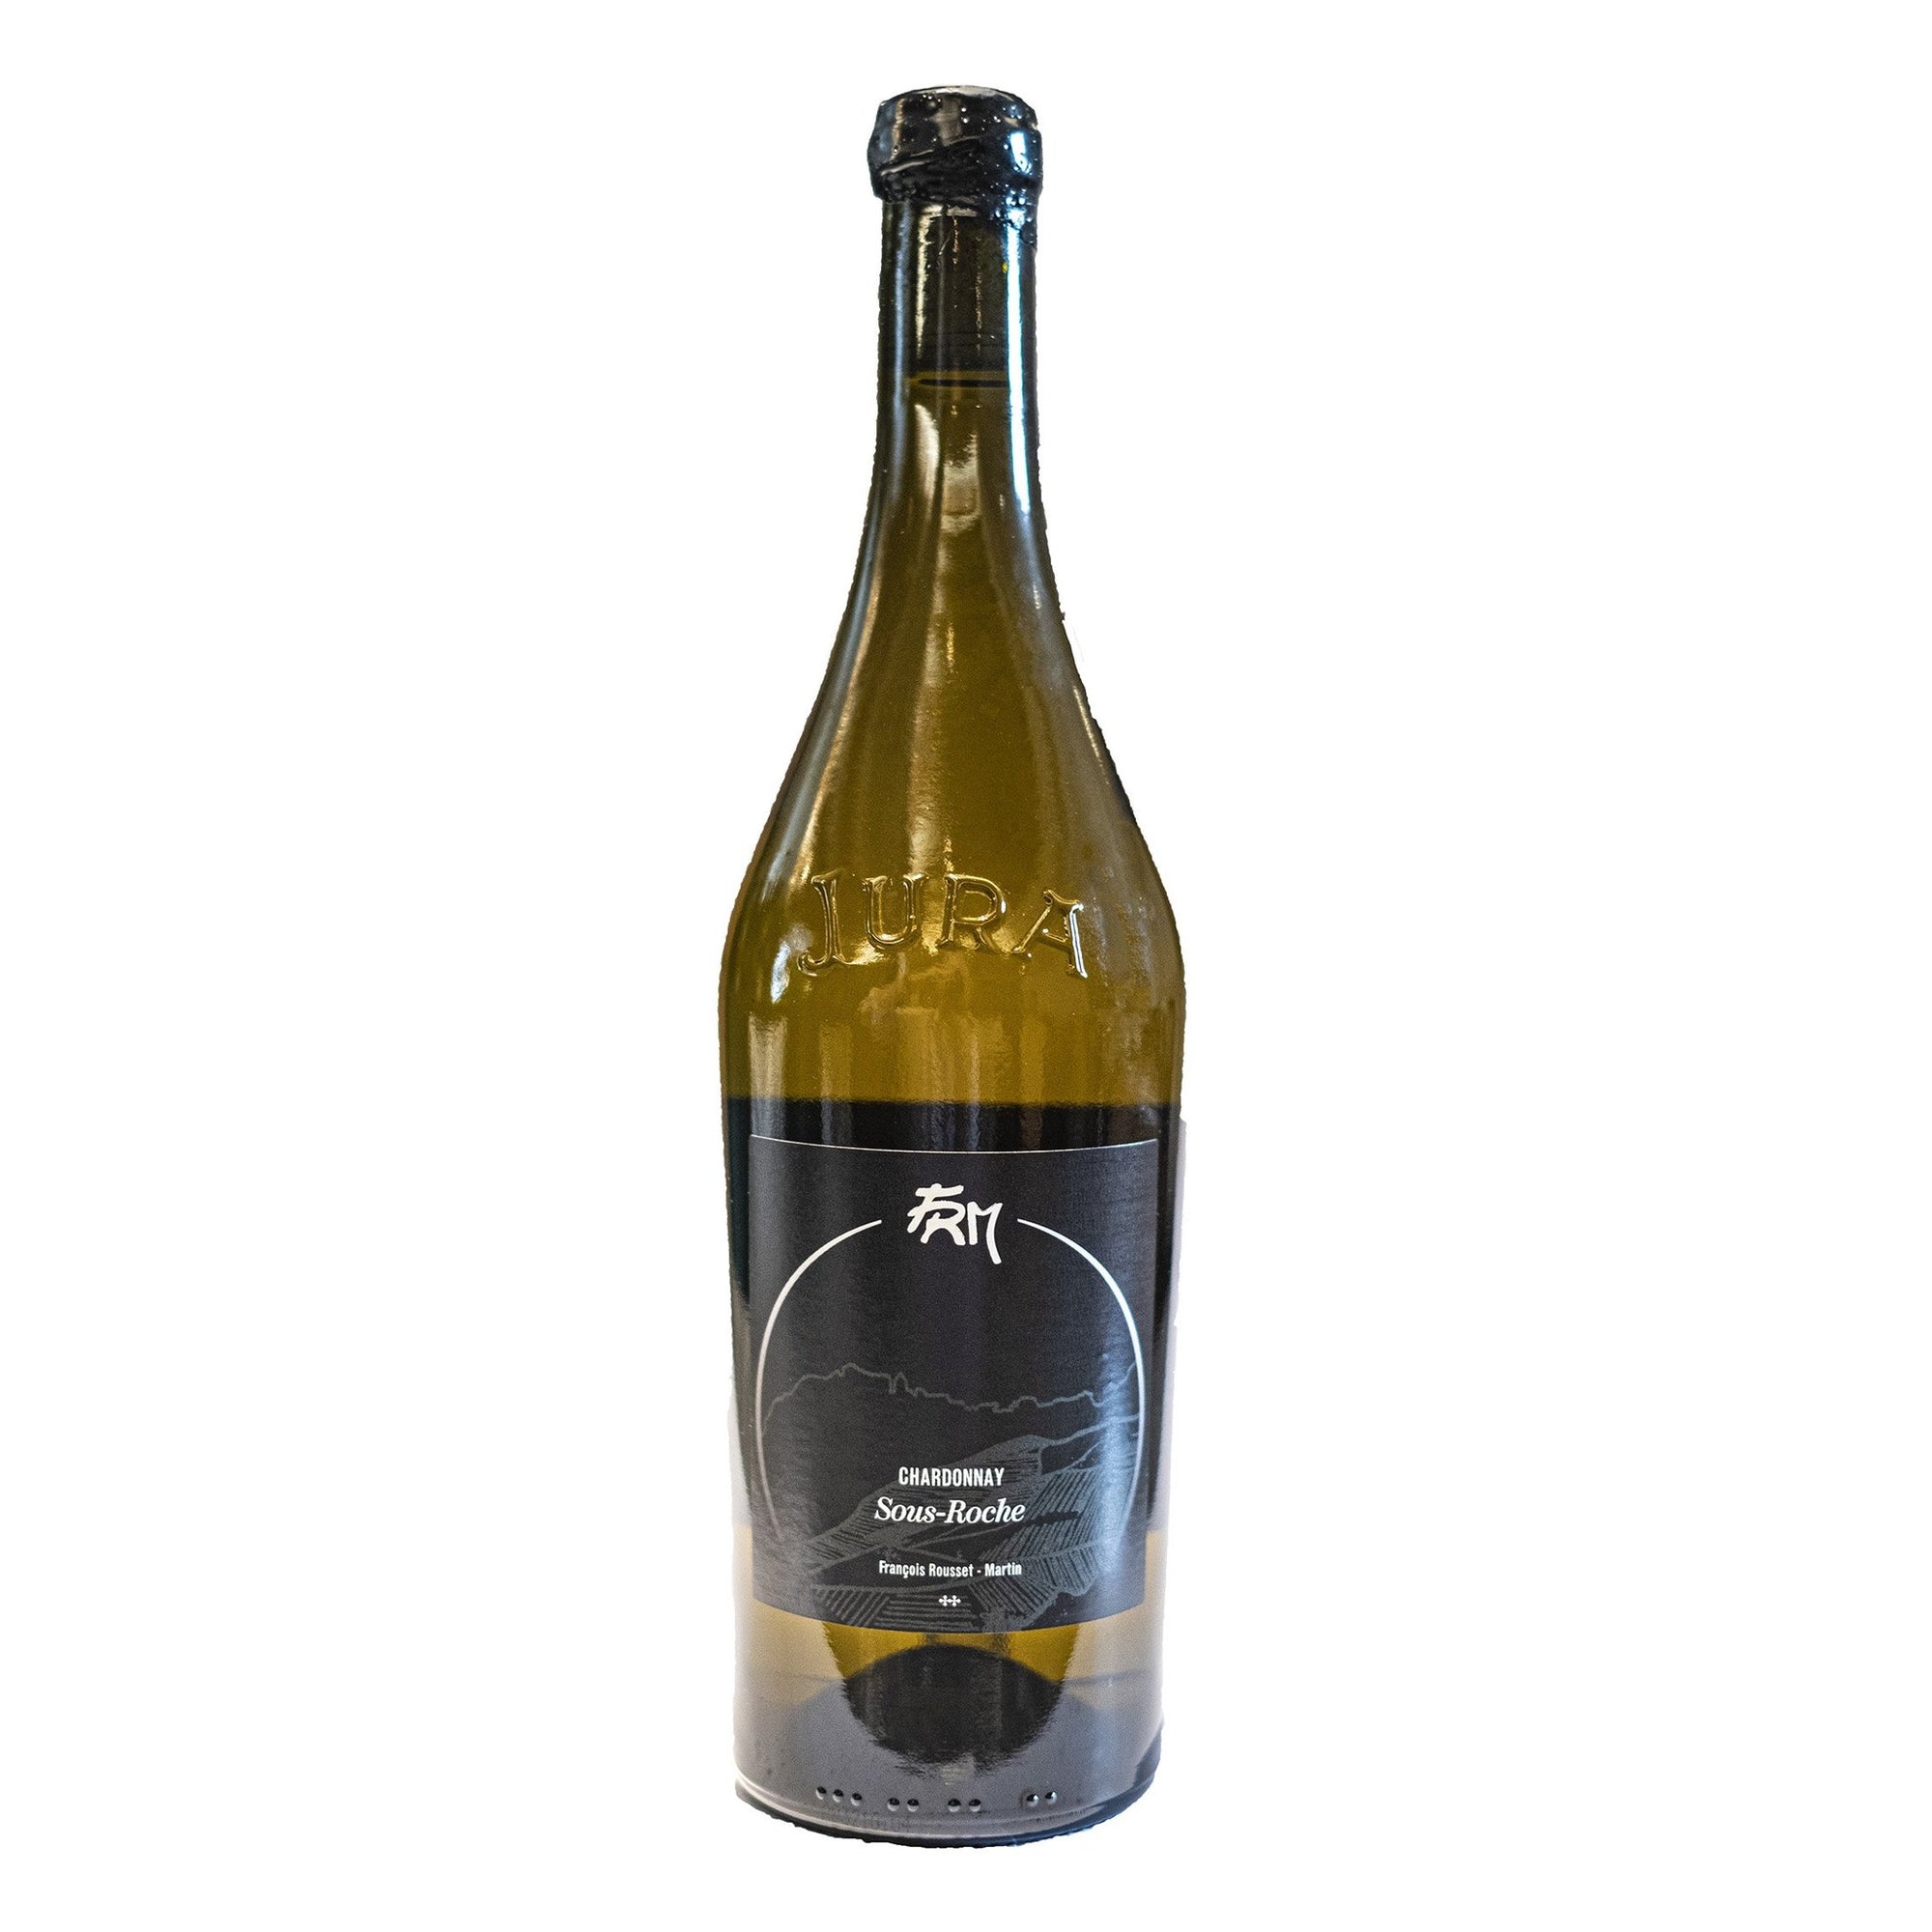 Domaine FRANCOIS ROUSSET-MARTIN Cotes du Jura Chardonnay "Sous-Roche" 2019